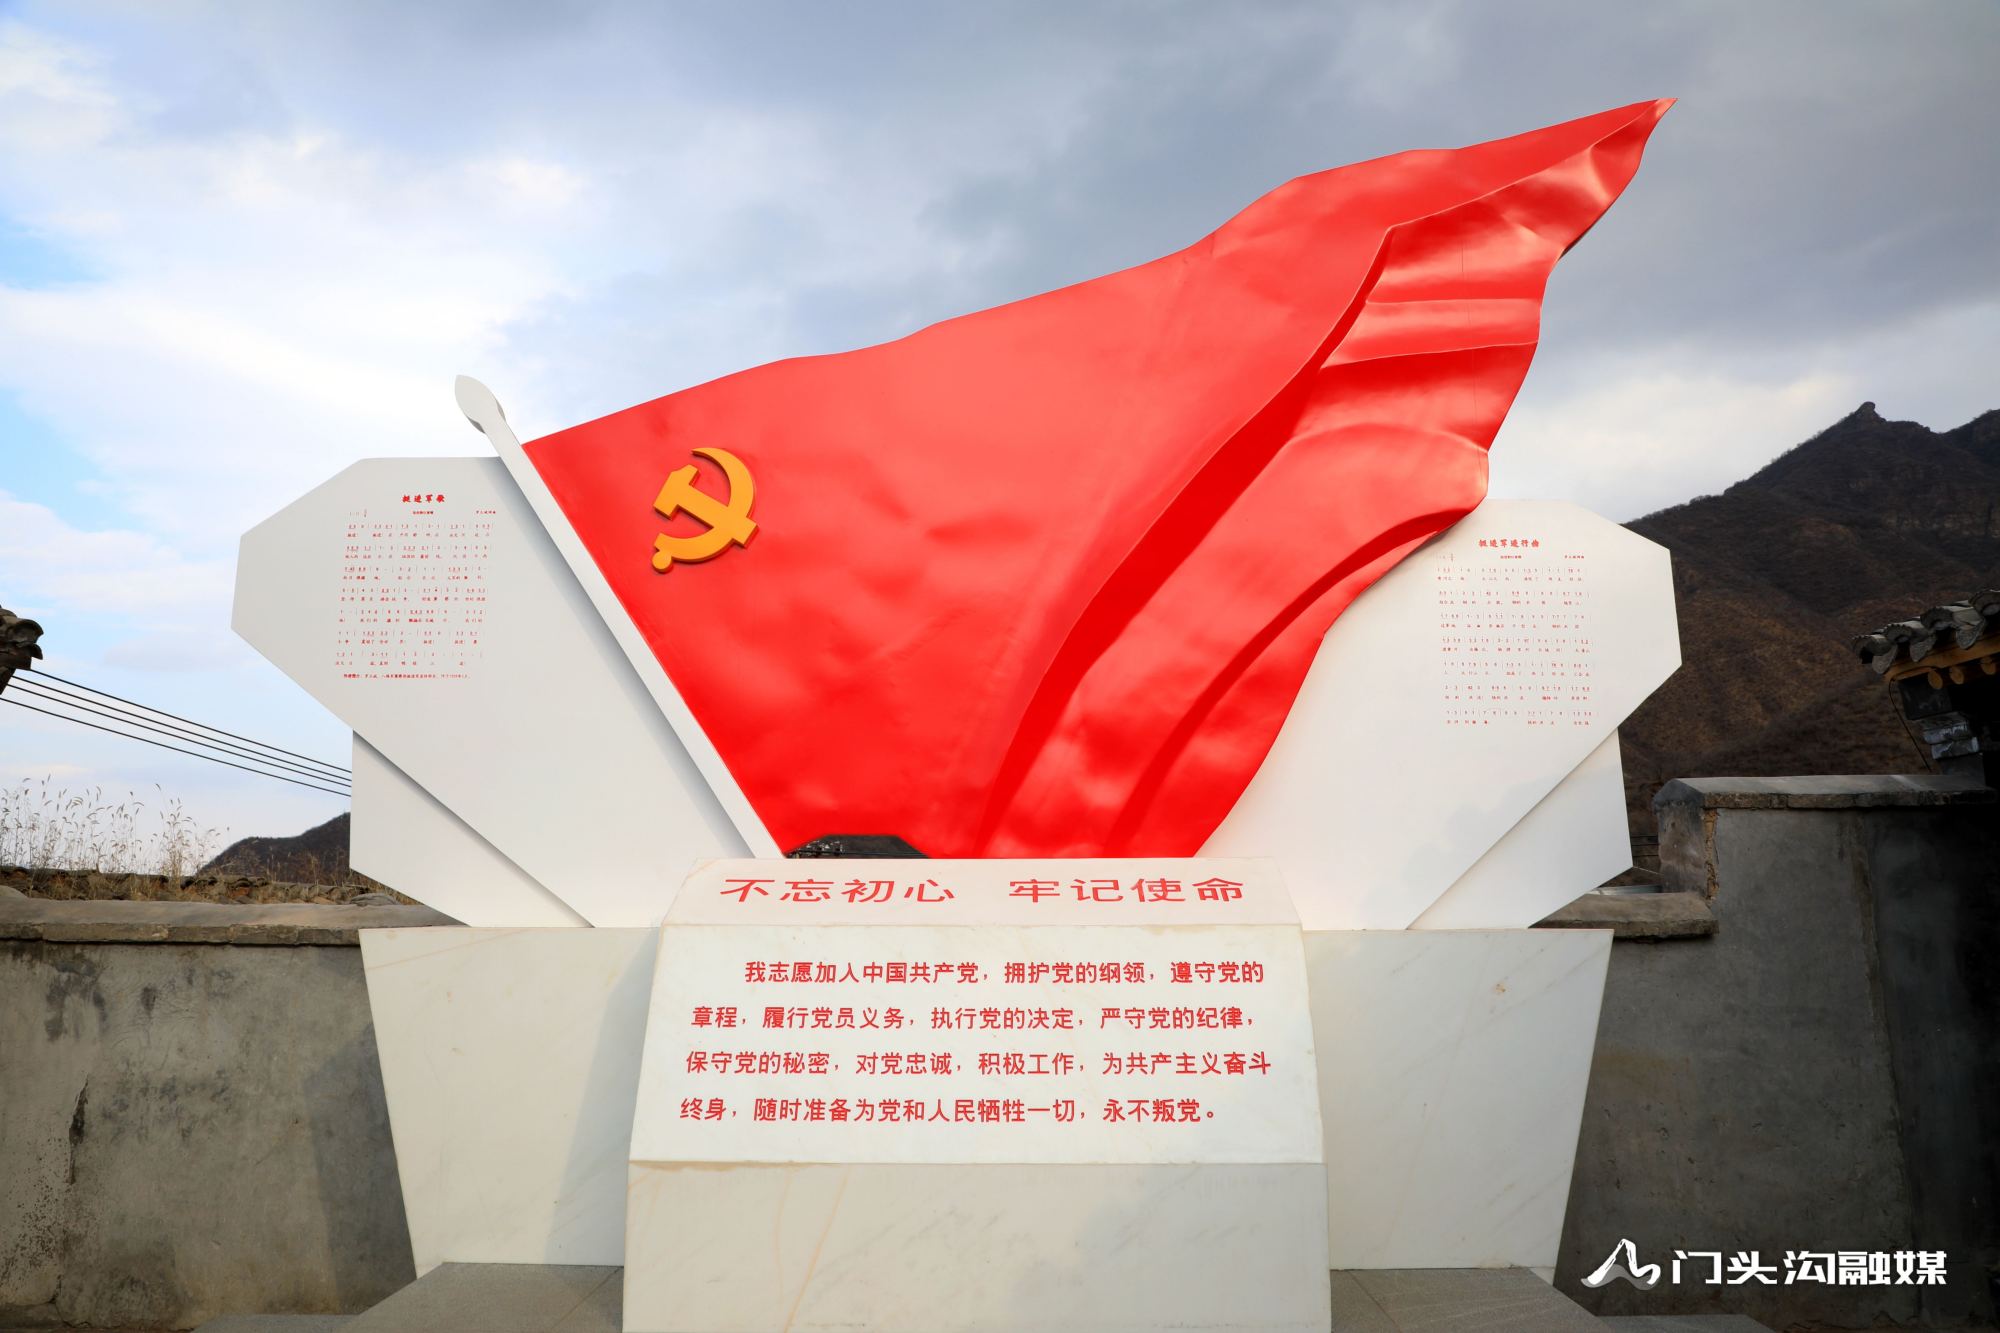 马栏革命纪念馆一日游图片